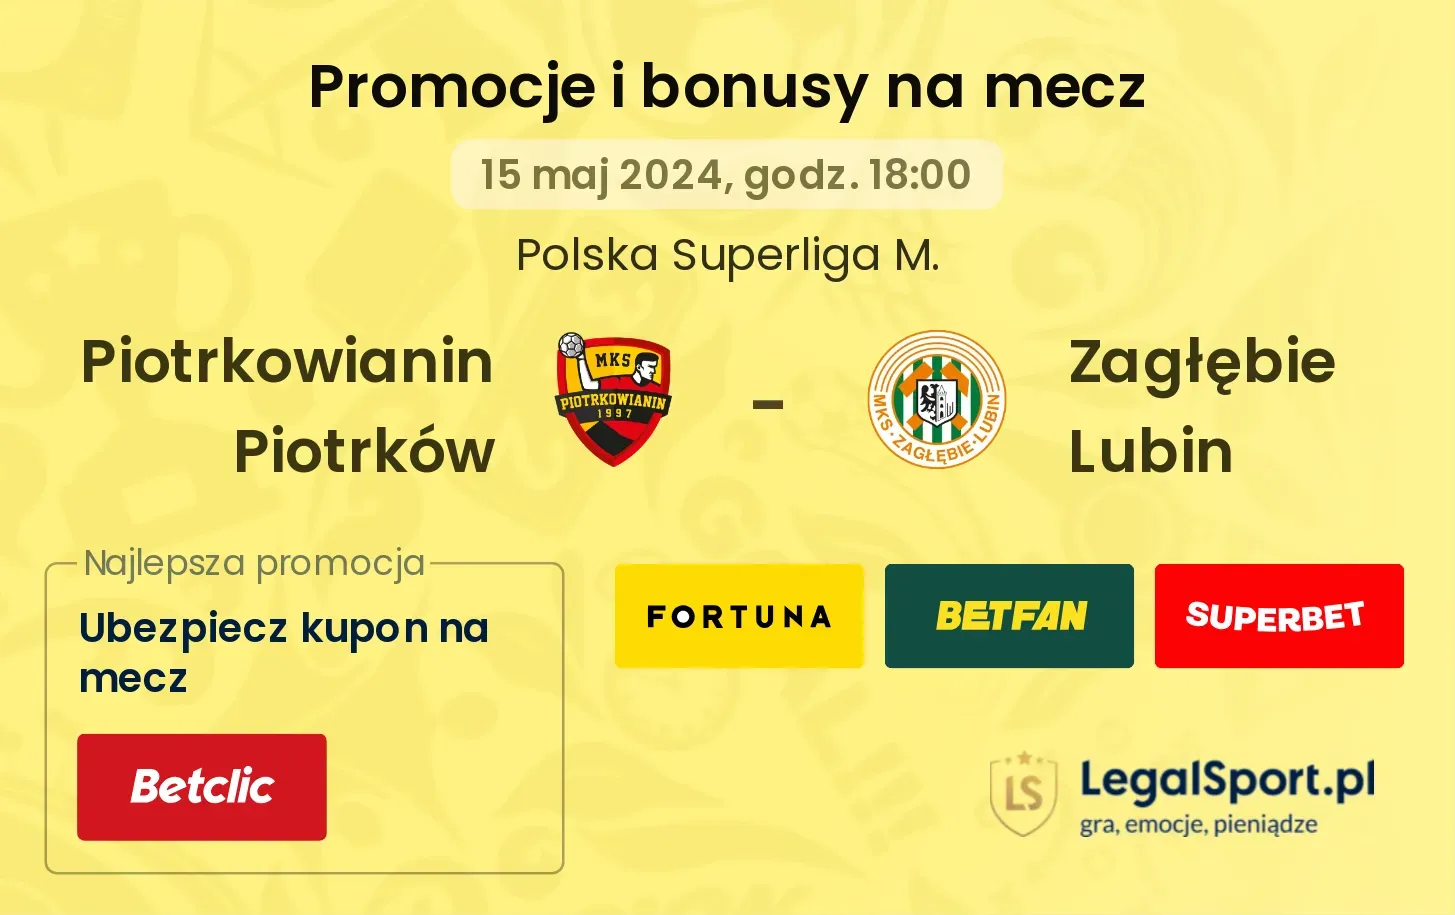 Piotrkowianin Piotrków - Zagłębie Lubin promocje bonusy na mecz